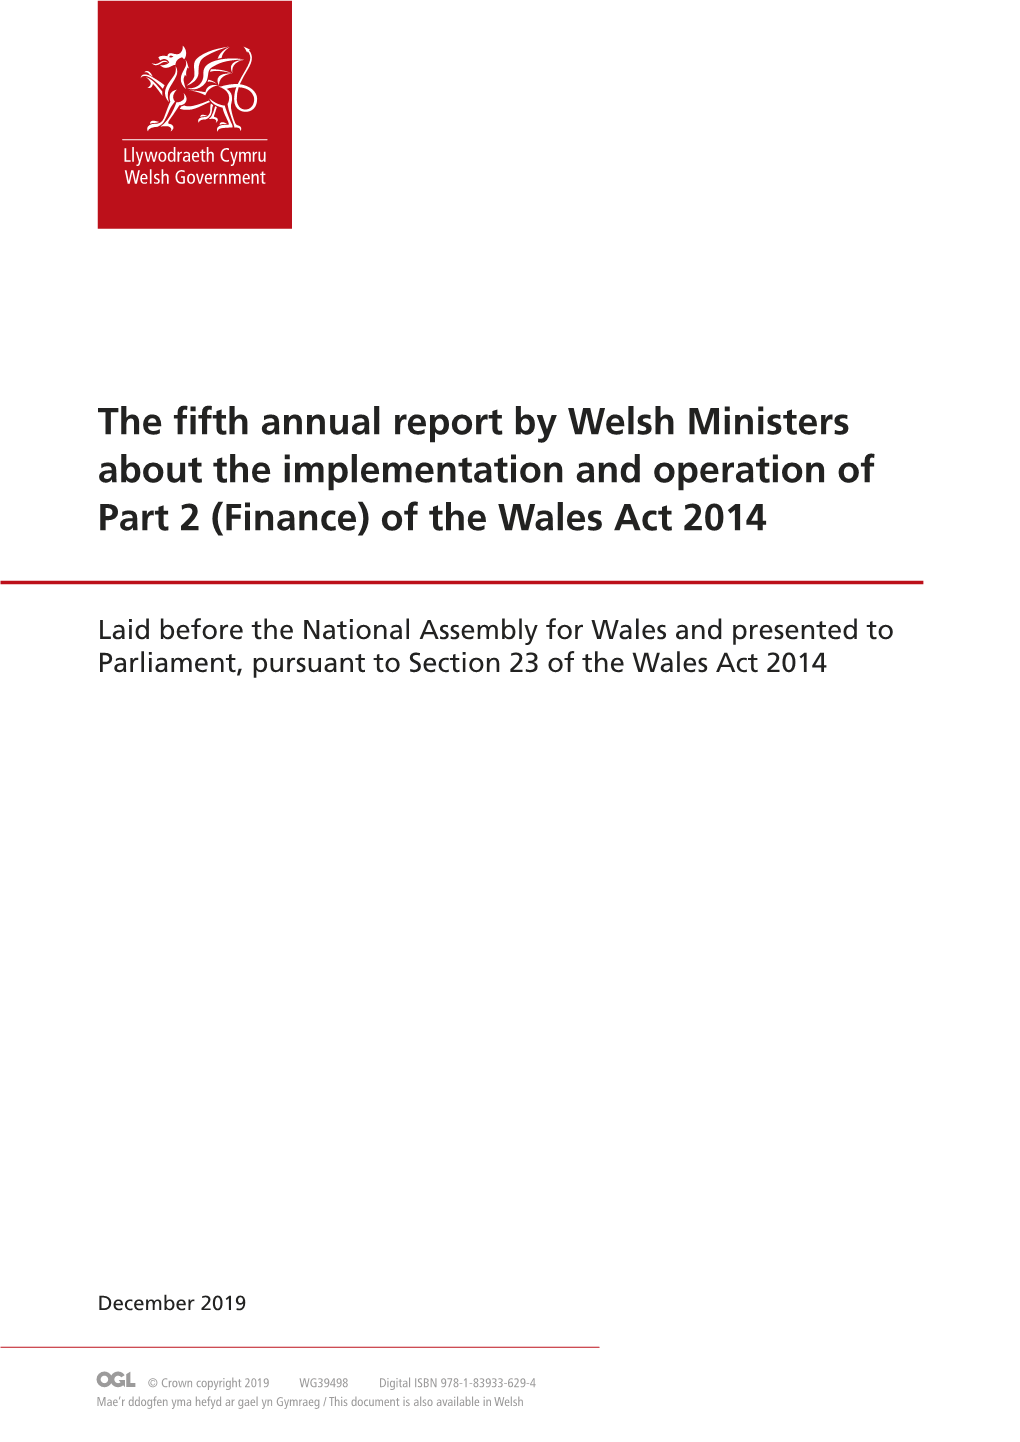 Wales Act 2014